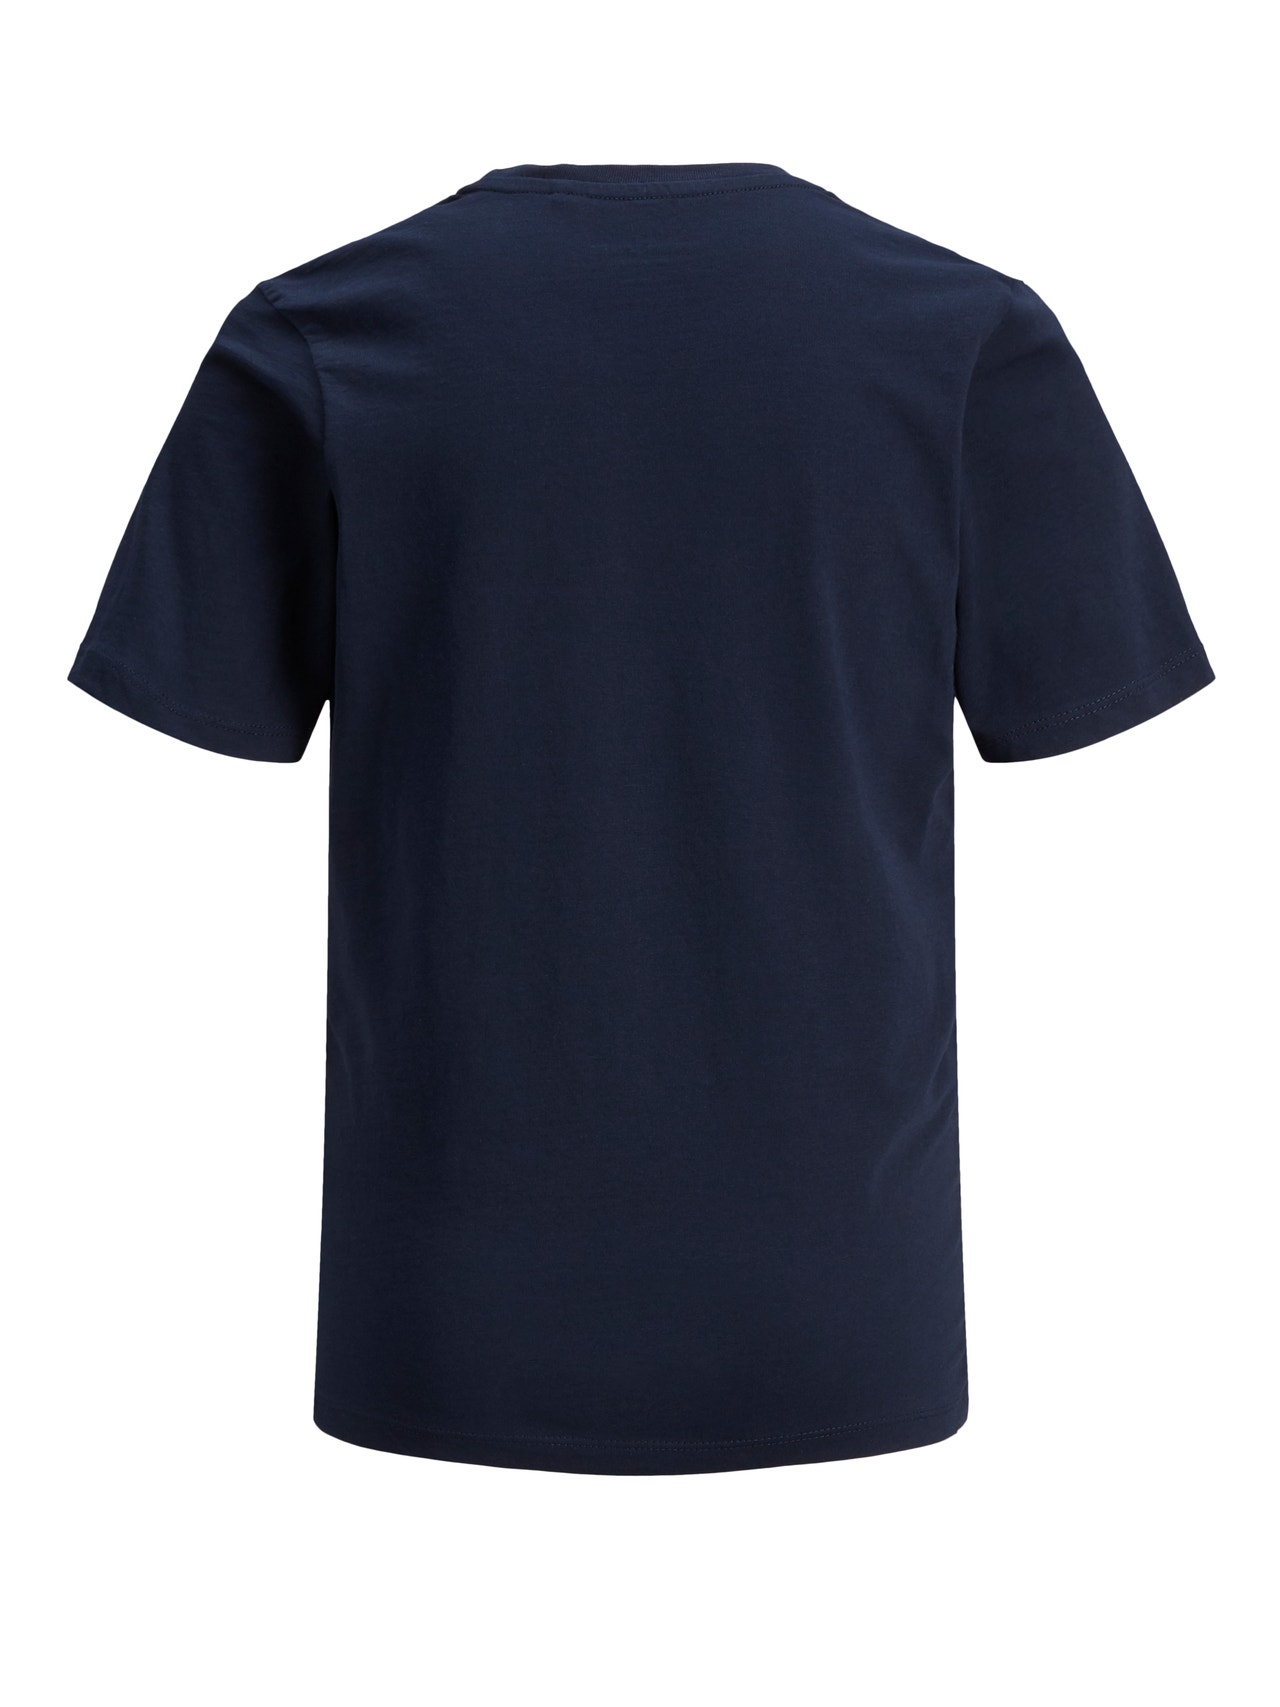 Jack & Jones Z logo T-shirt Dla chłopców -Navy Blazer - 12152730